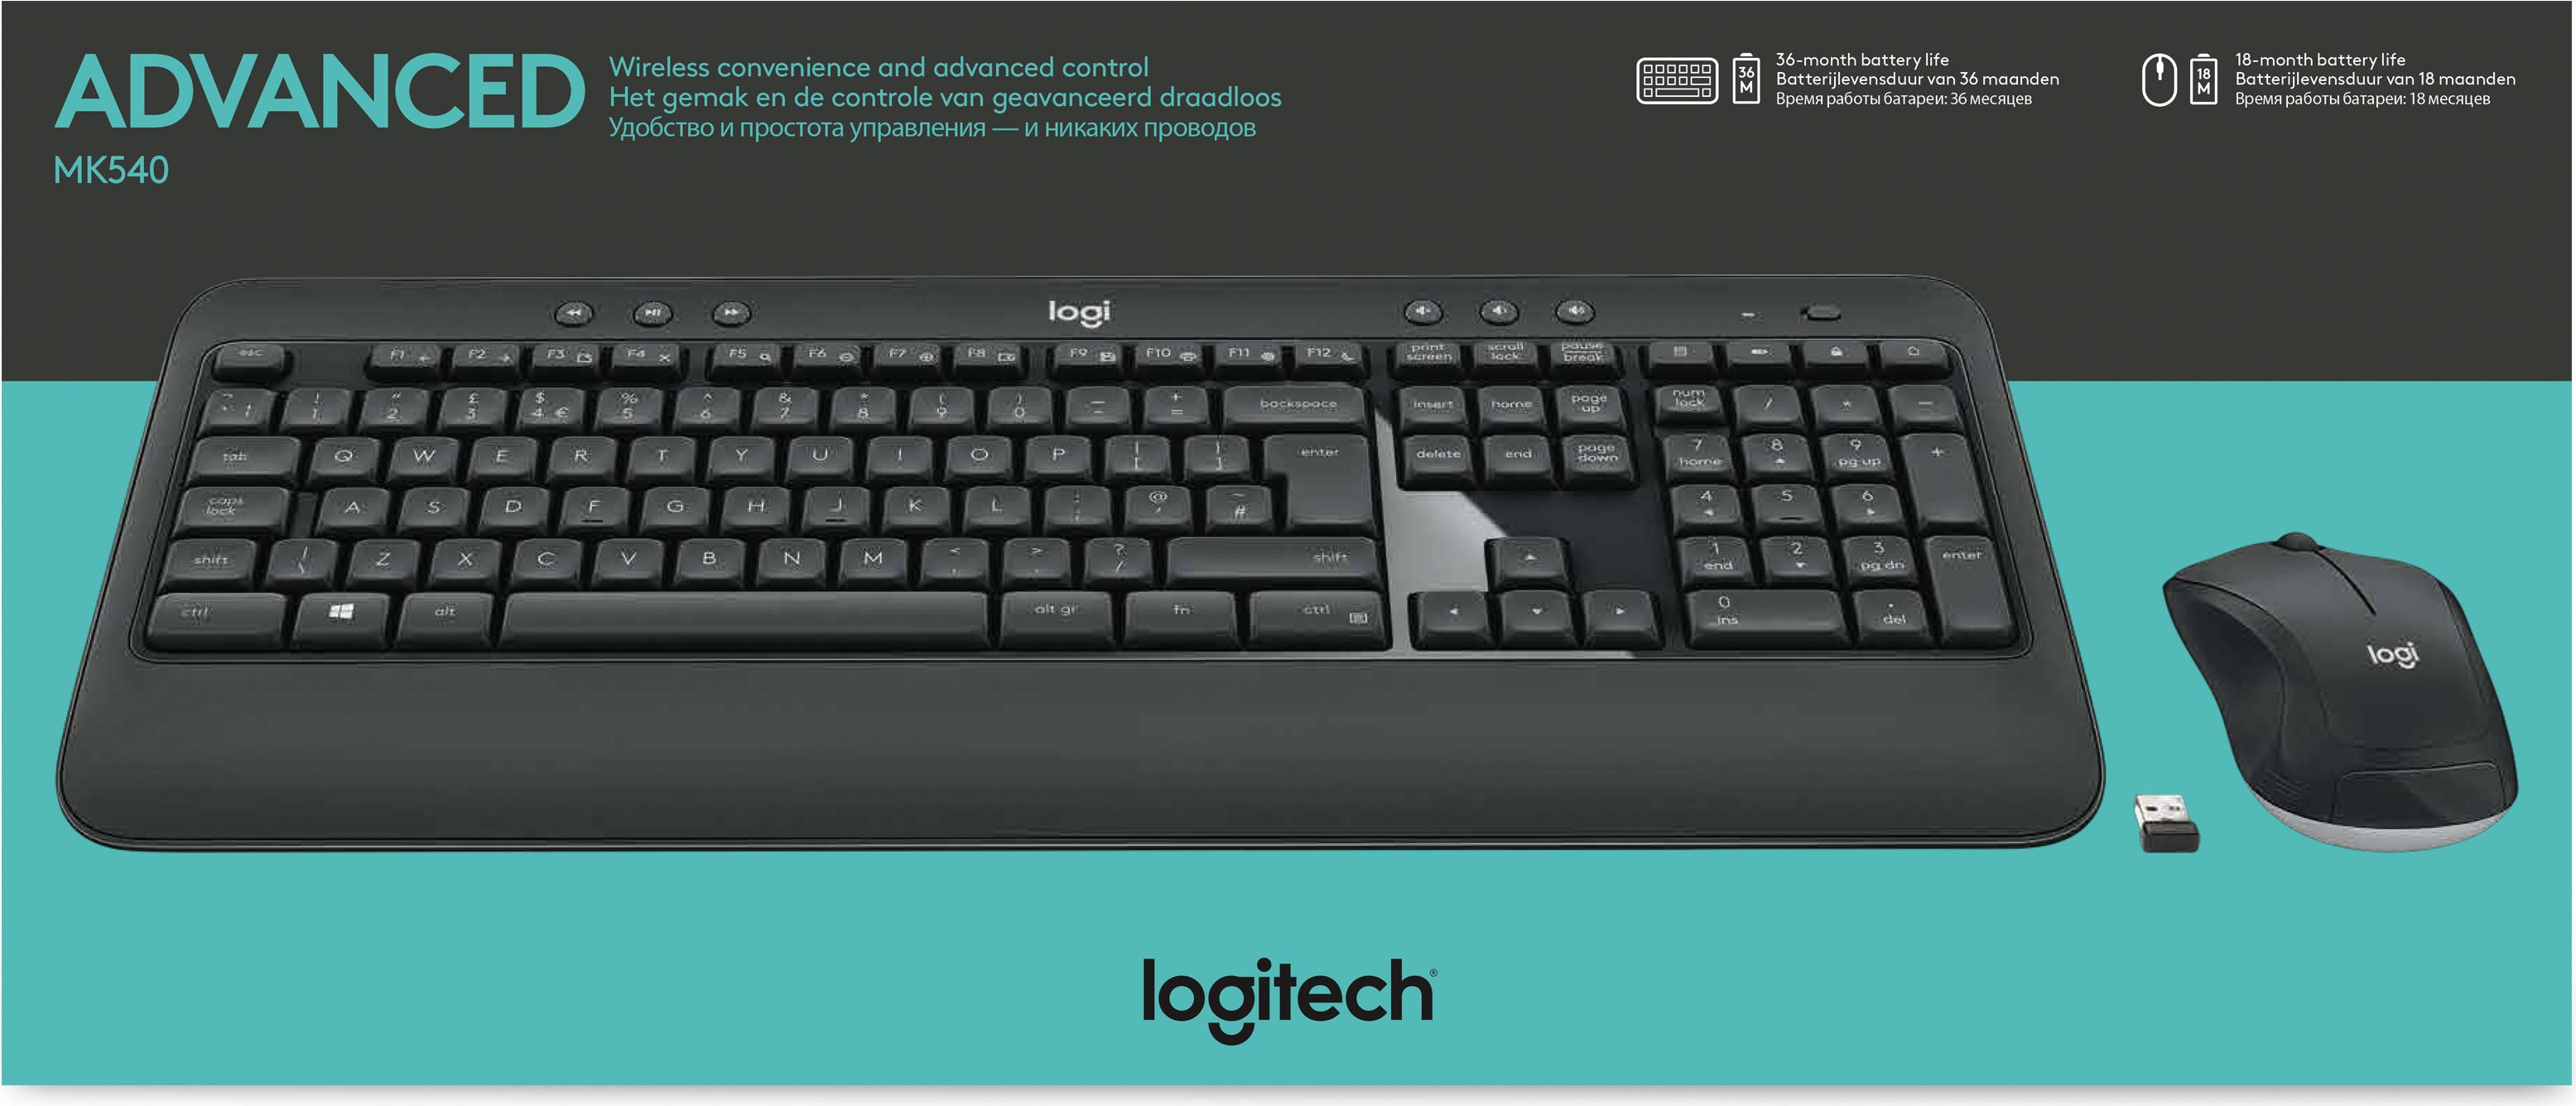 Logitech MK540 Advanced (920-008676)